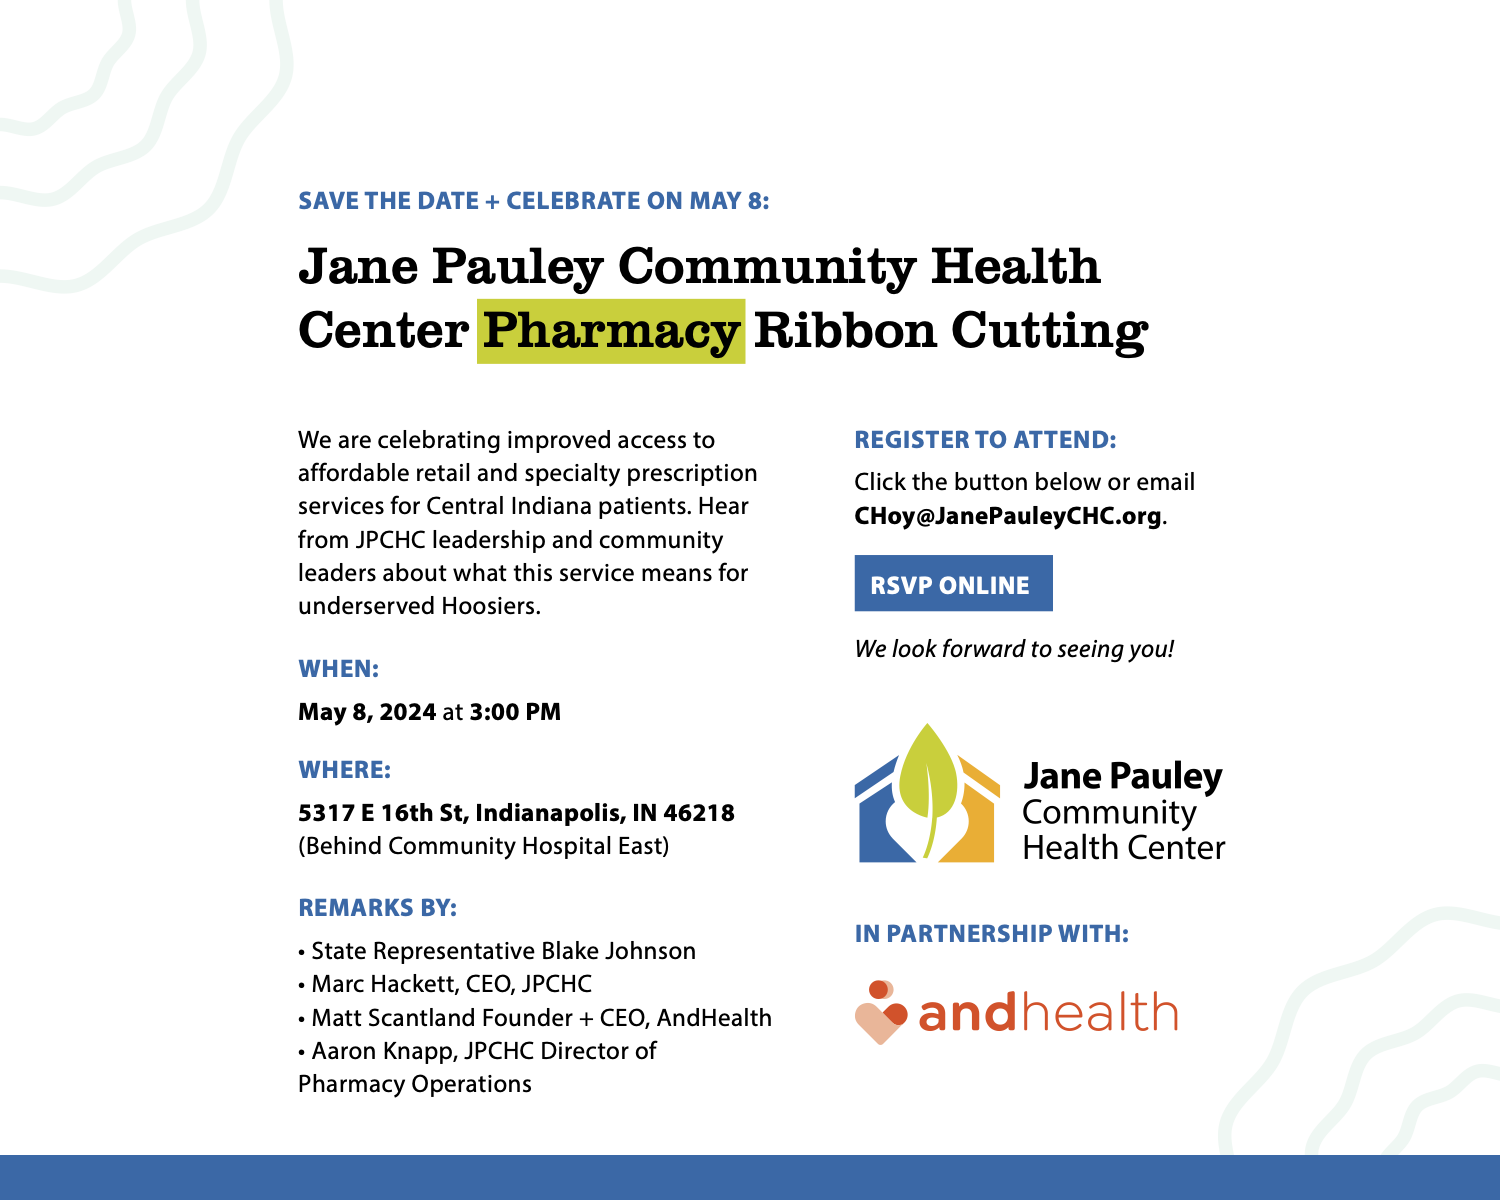 Jane Pauley CHC Save The Date Ribbon Cutting